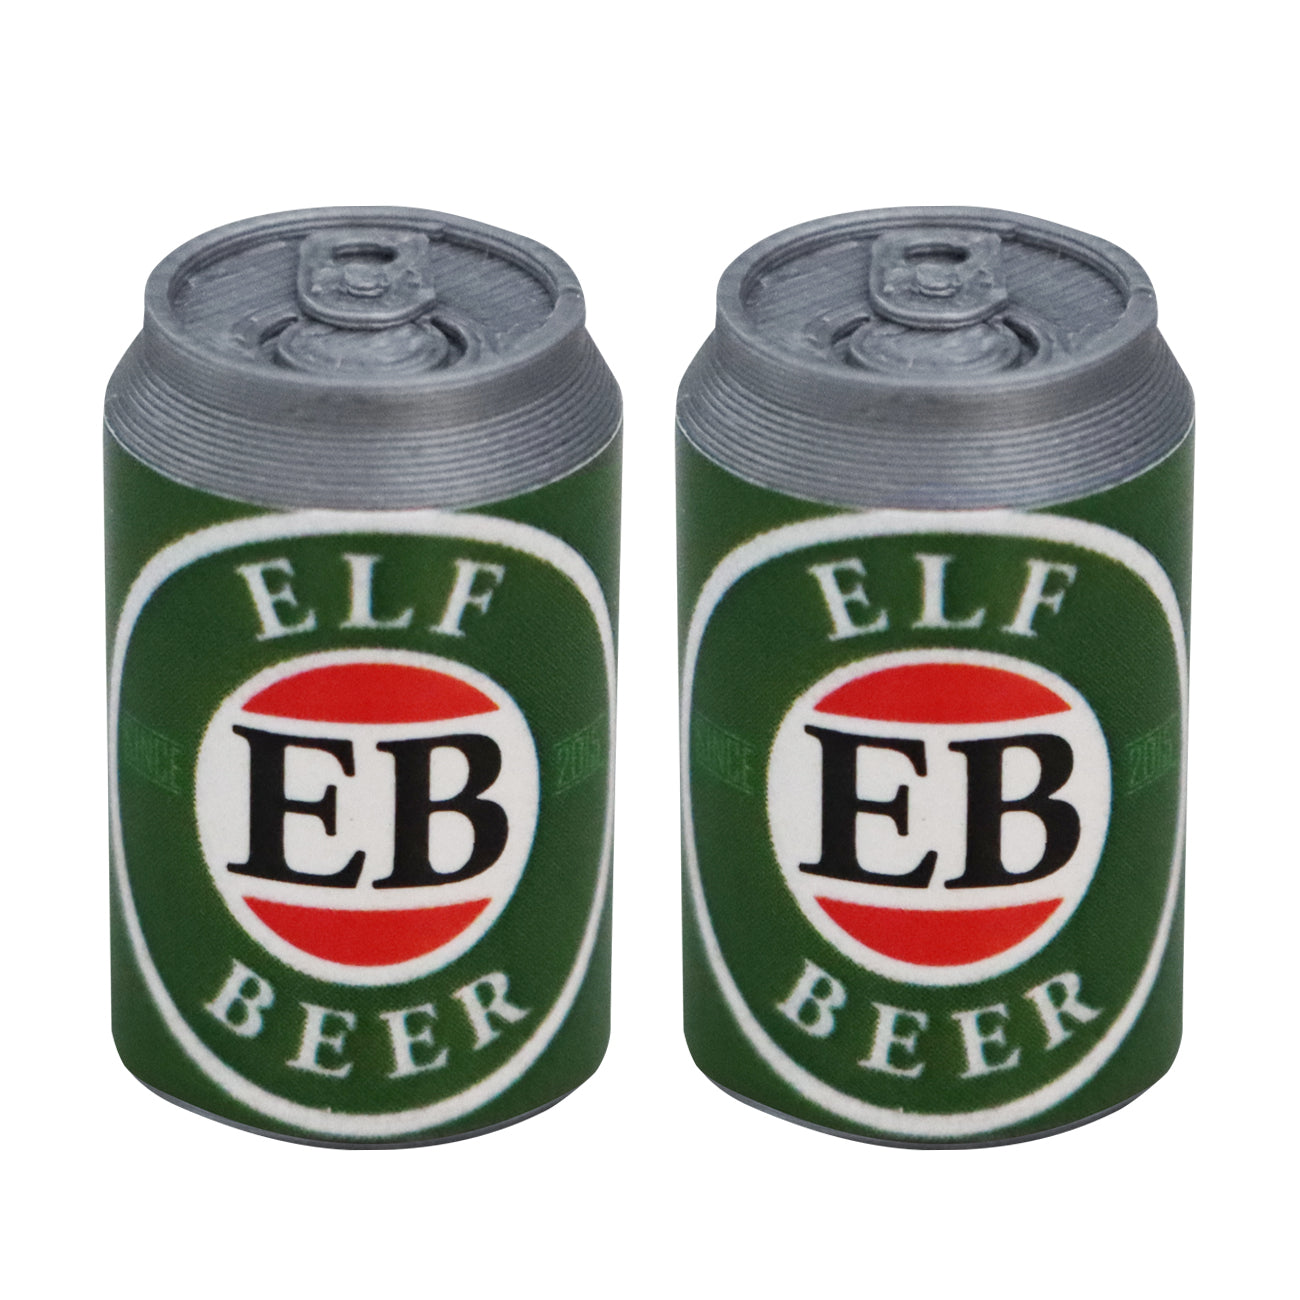 elf beer, miniature elf beer cans